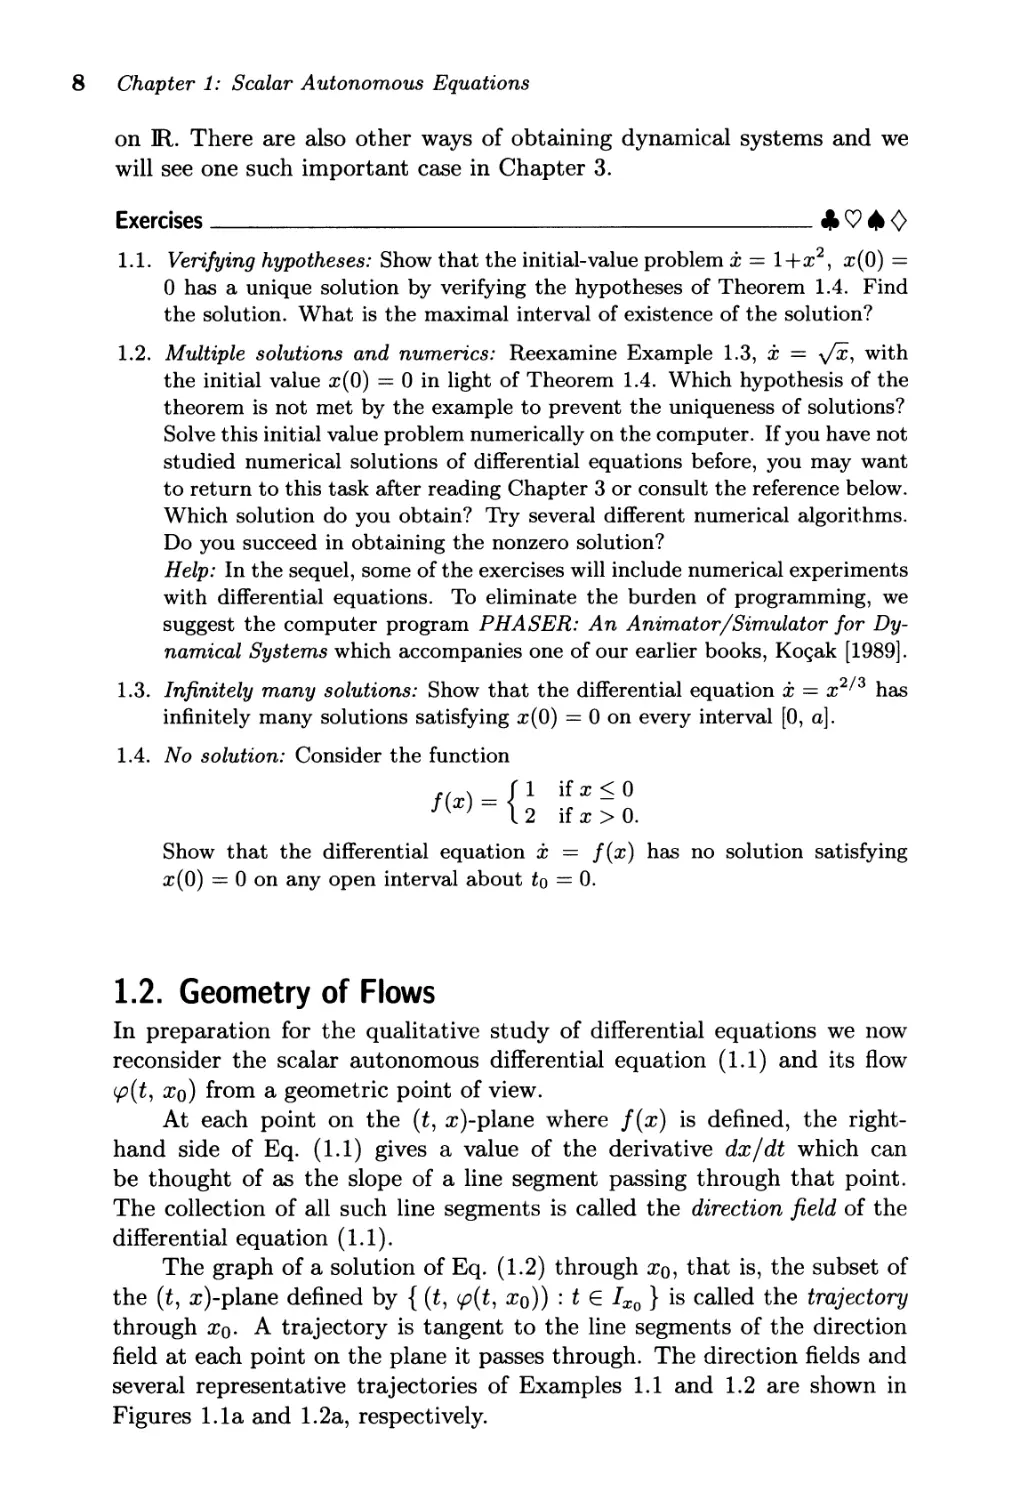 1.2. Geometry of Flows